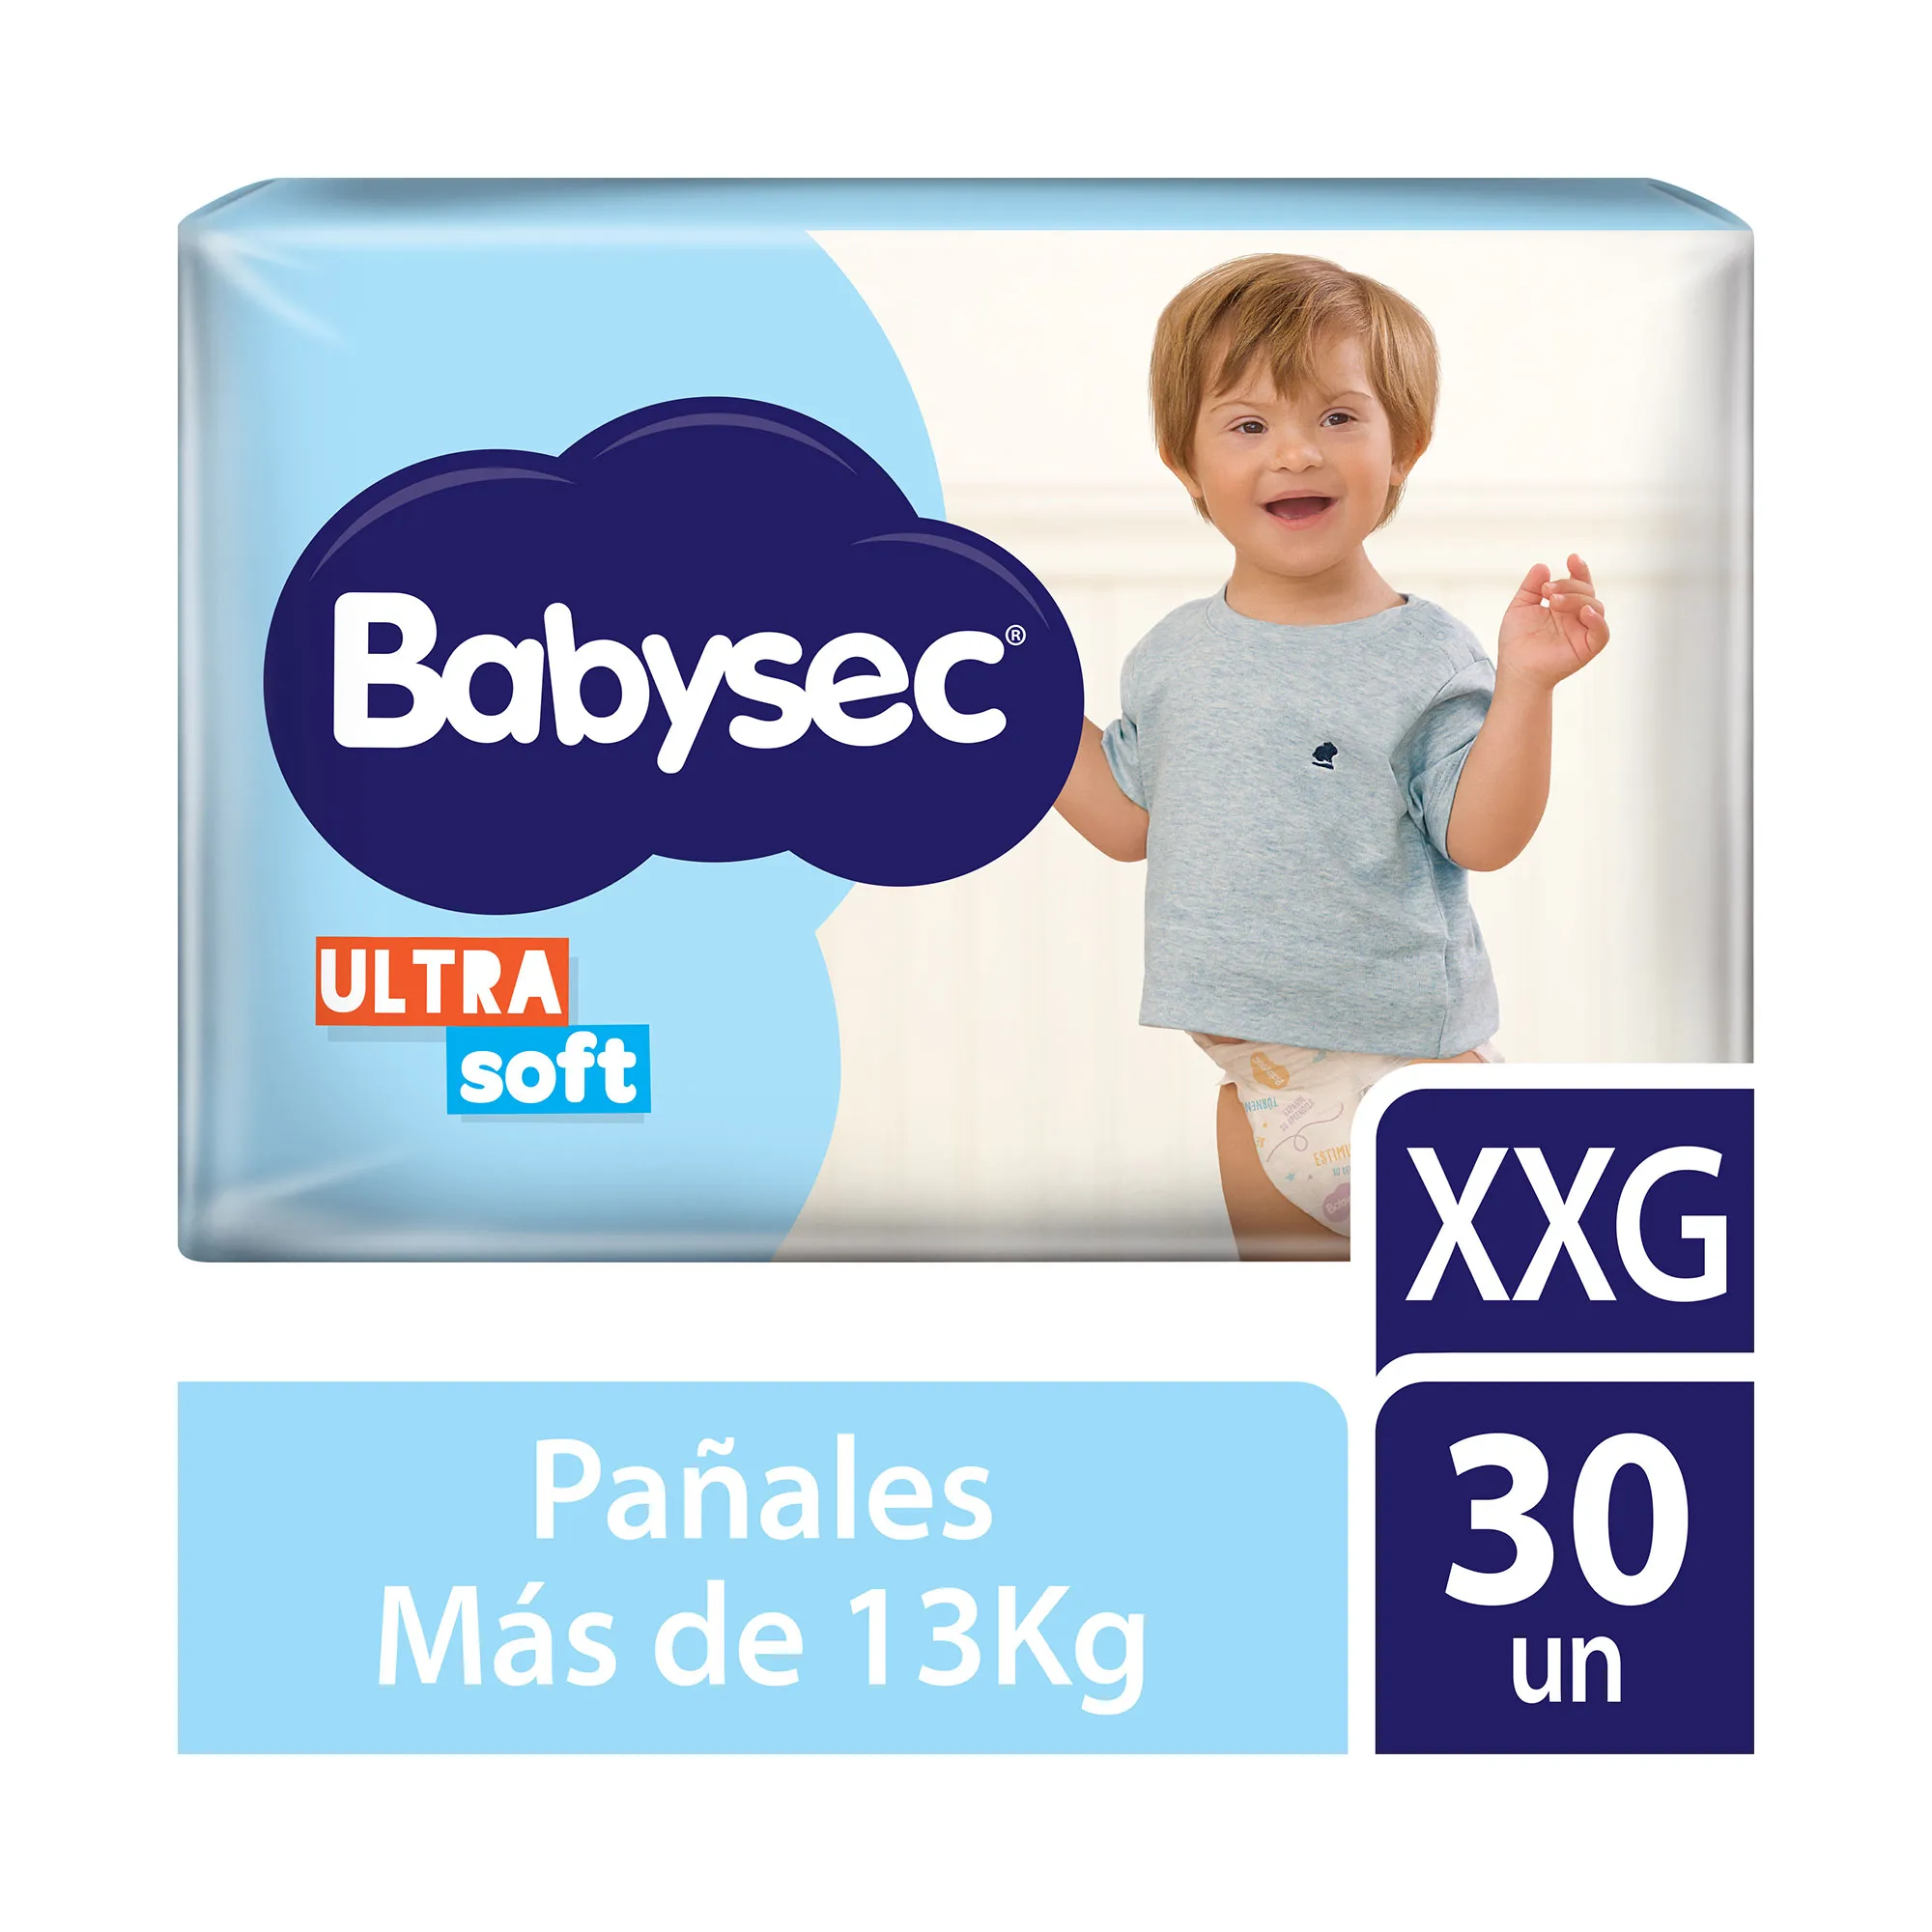 Imagen 1 de 2 de Pañales Babysec Ultra Soft Talle XXG x30 unidades